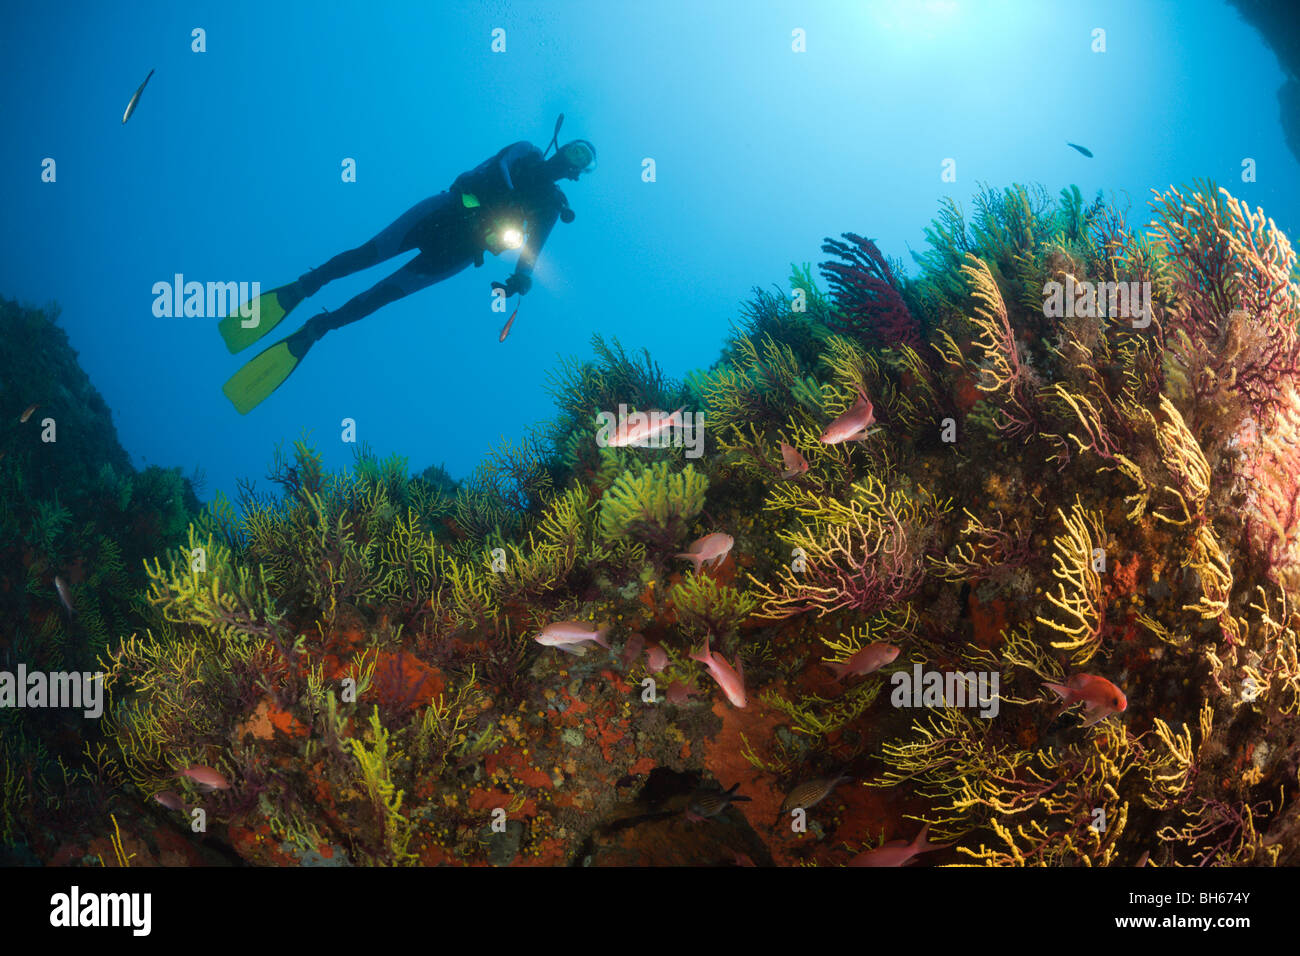 Diver over Reef with Anthias, Anthias anthias, Tamariu, Costa Brava, Mediterranean Sea, Spain Stock Photo